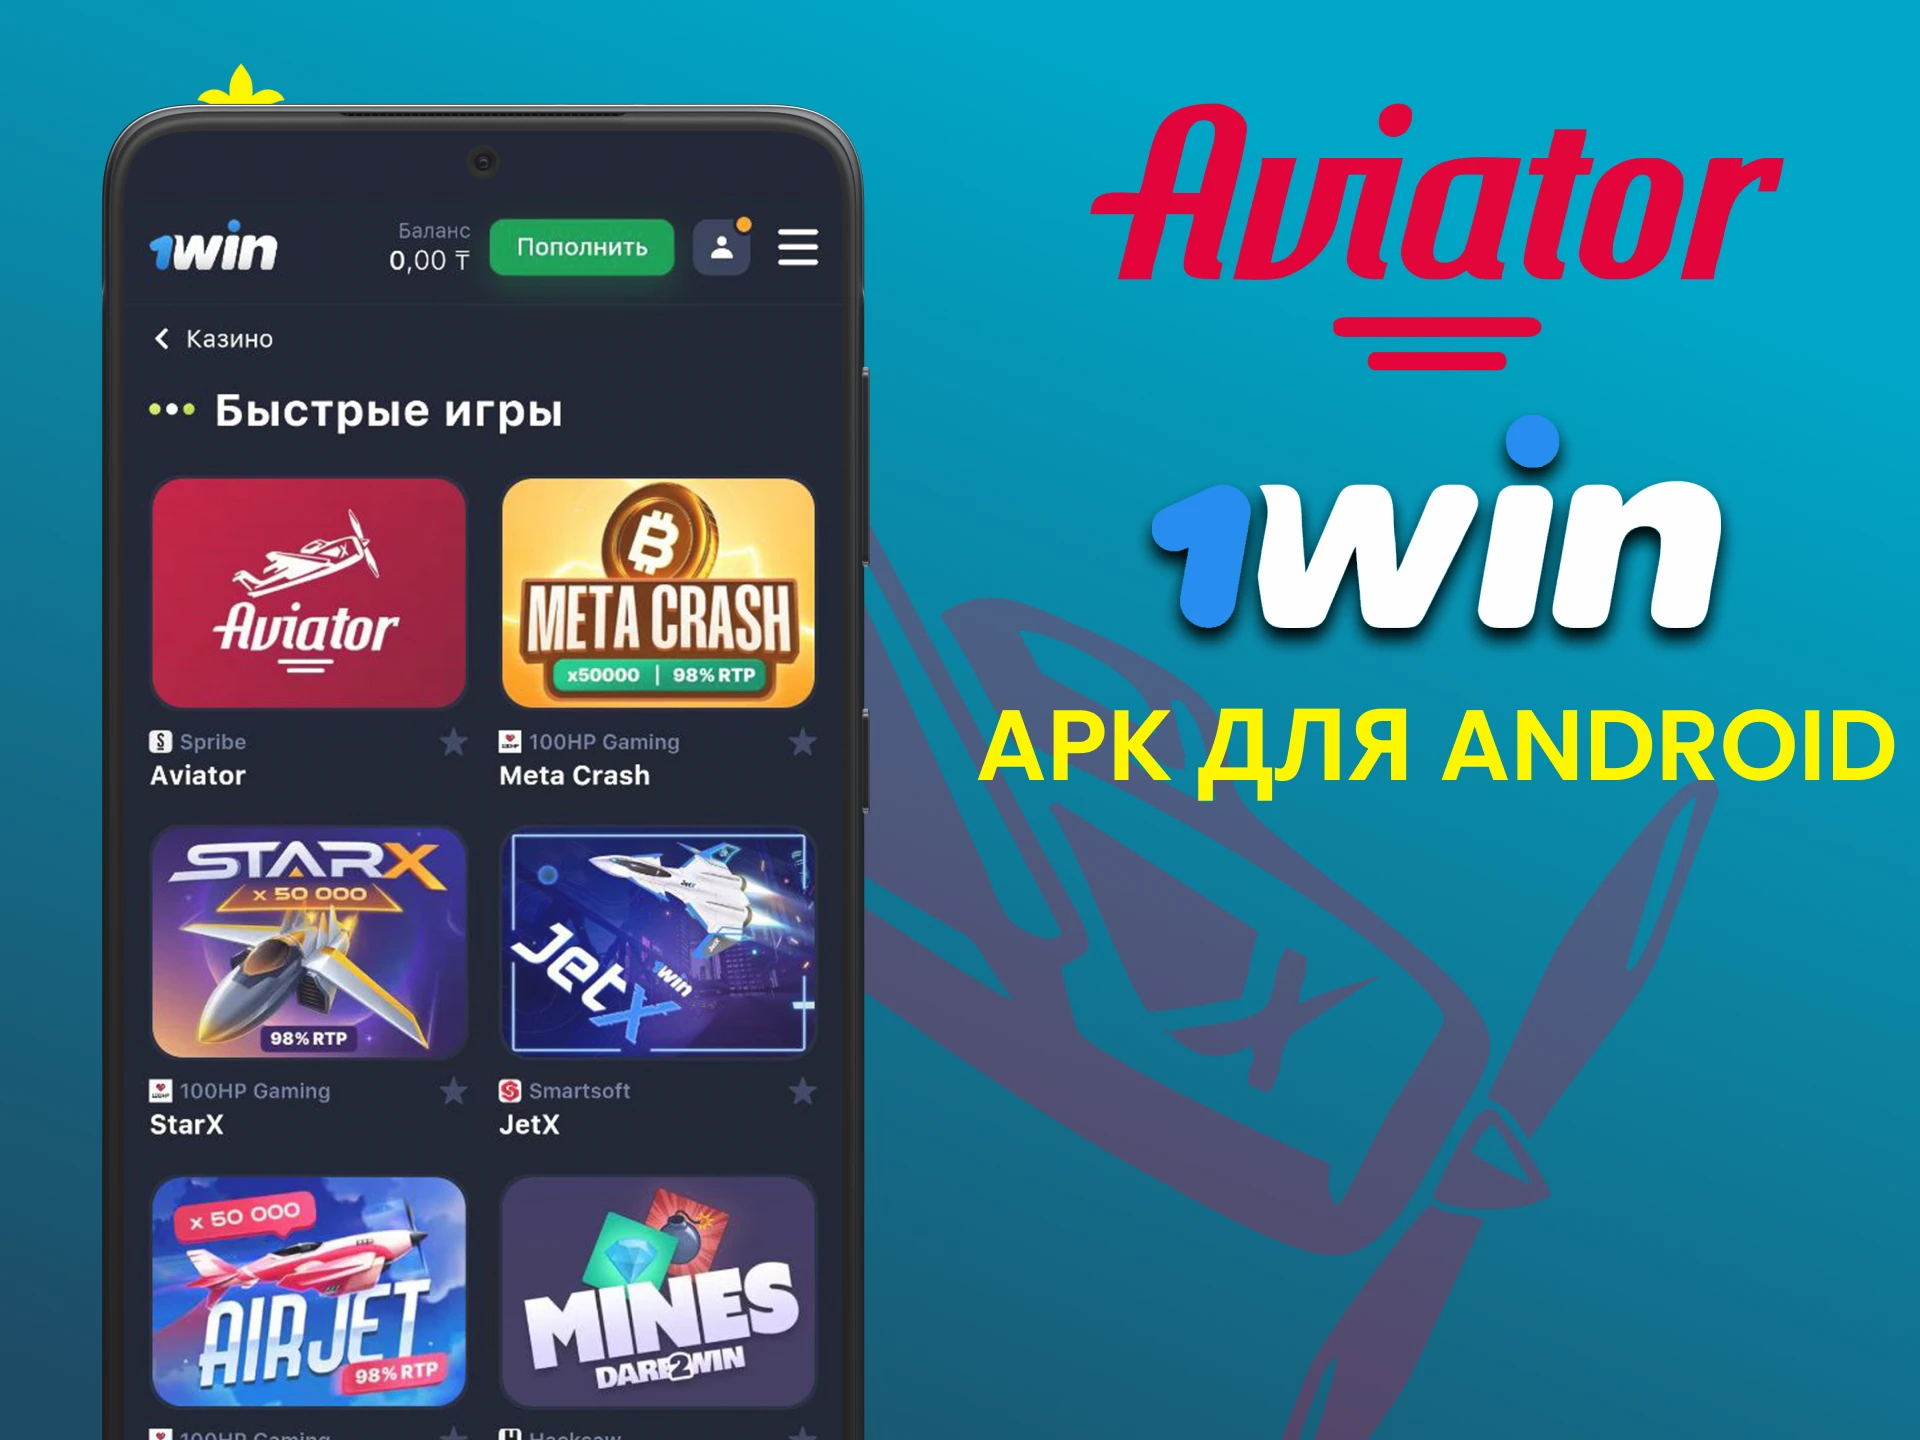 Используйте приложение 1win для игры в Авиатор на Android.